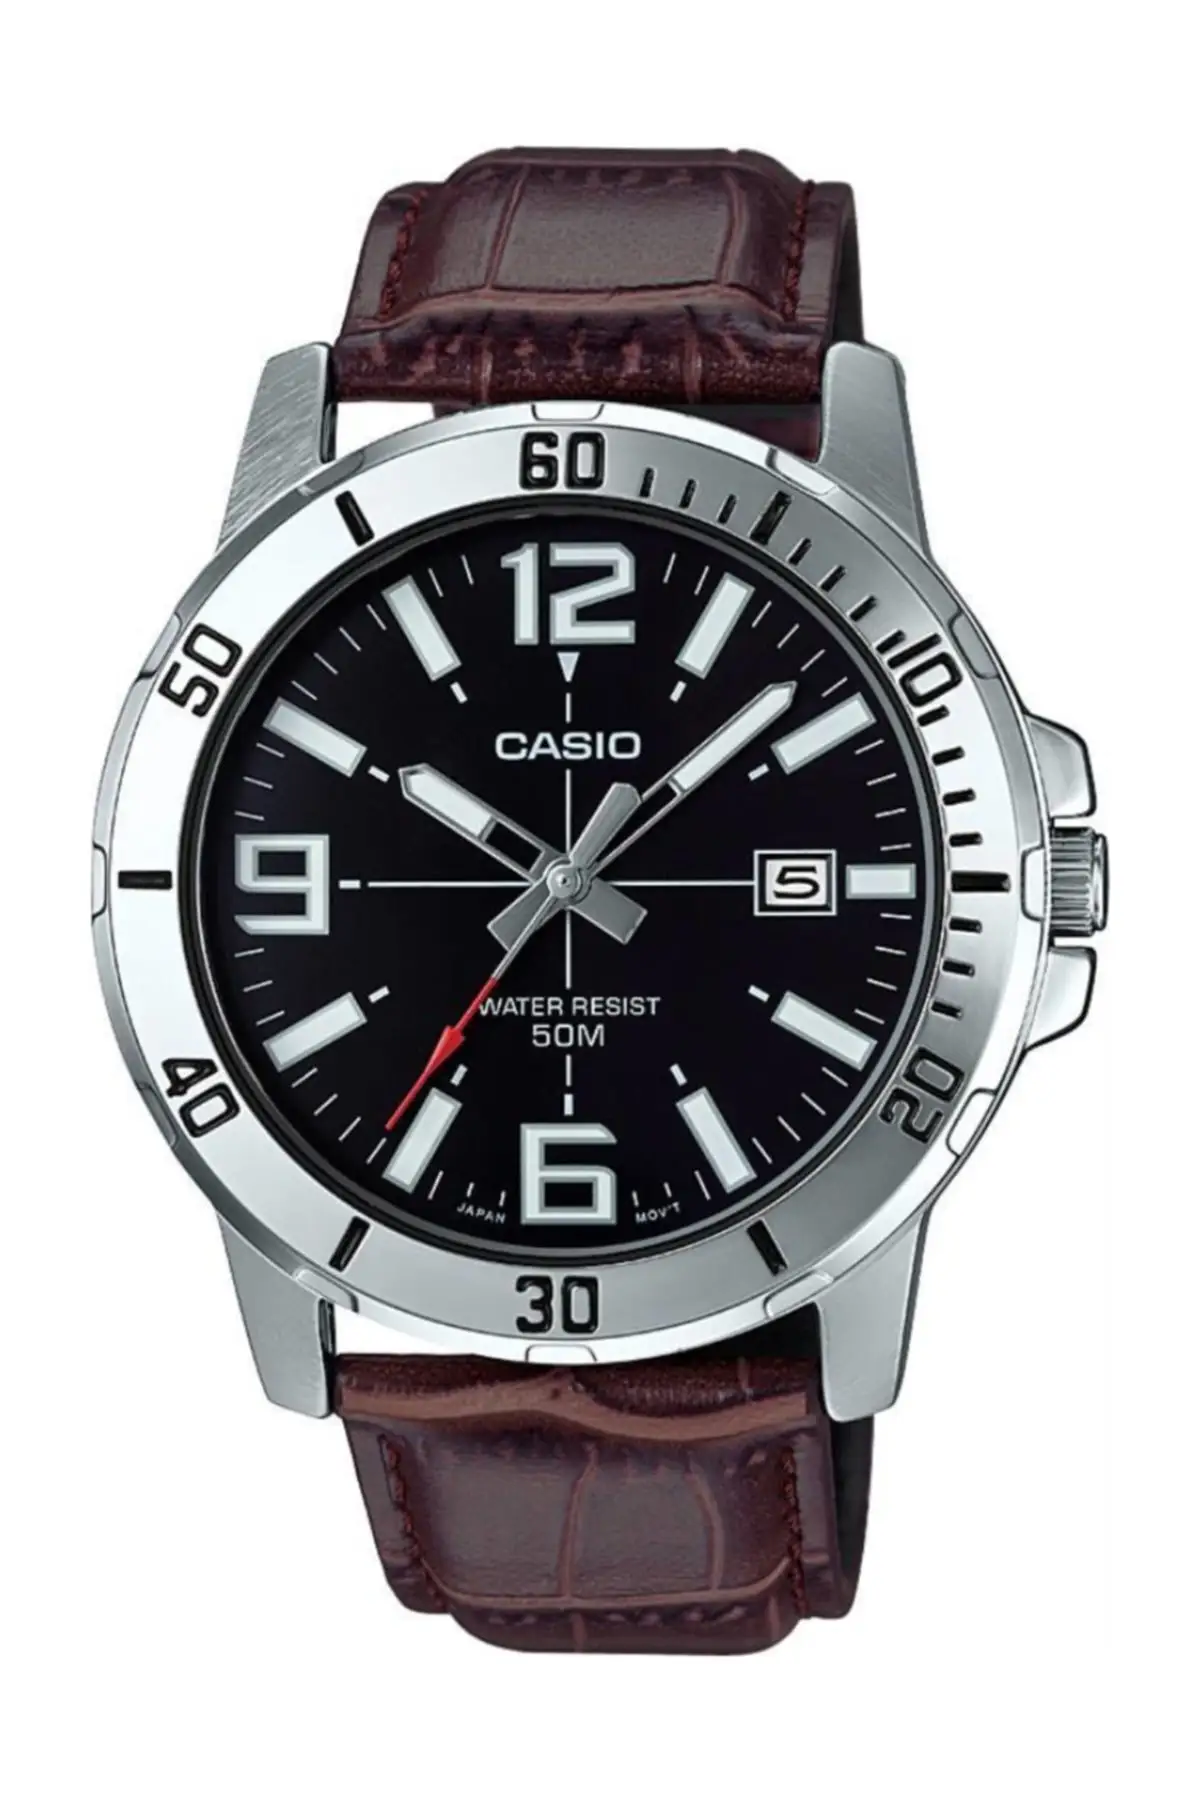 

Casio Мужские Коричневые наручные часы MTP-VD01L-1BVUDF Классические Стильные Модели Европа Америка модные часы